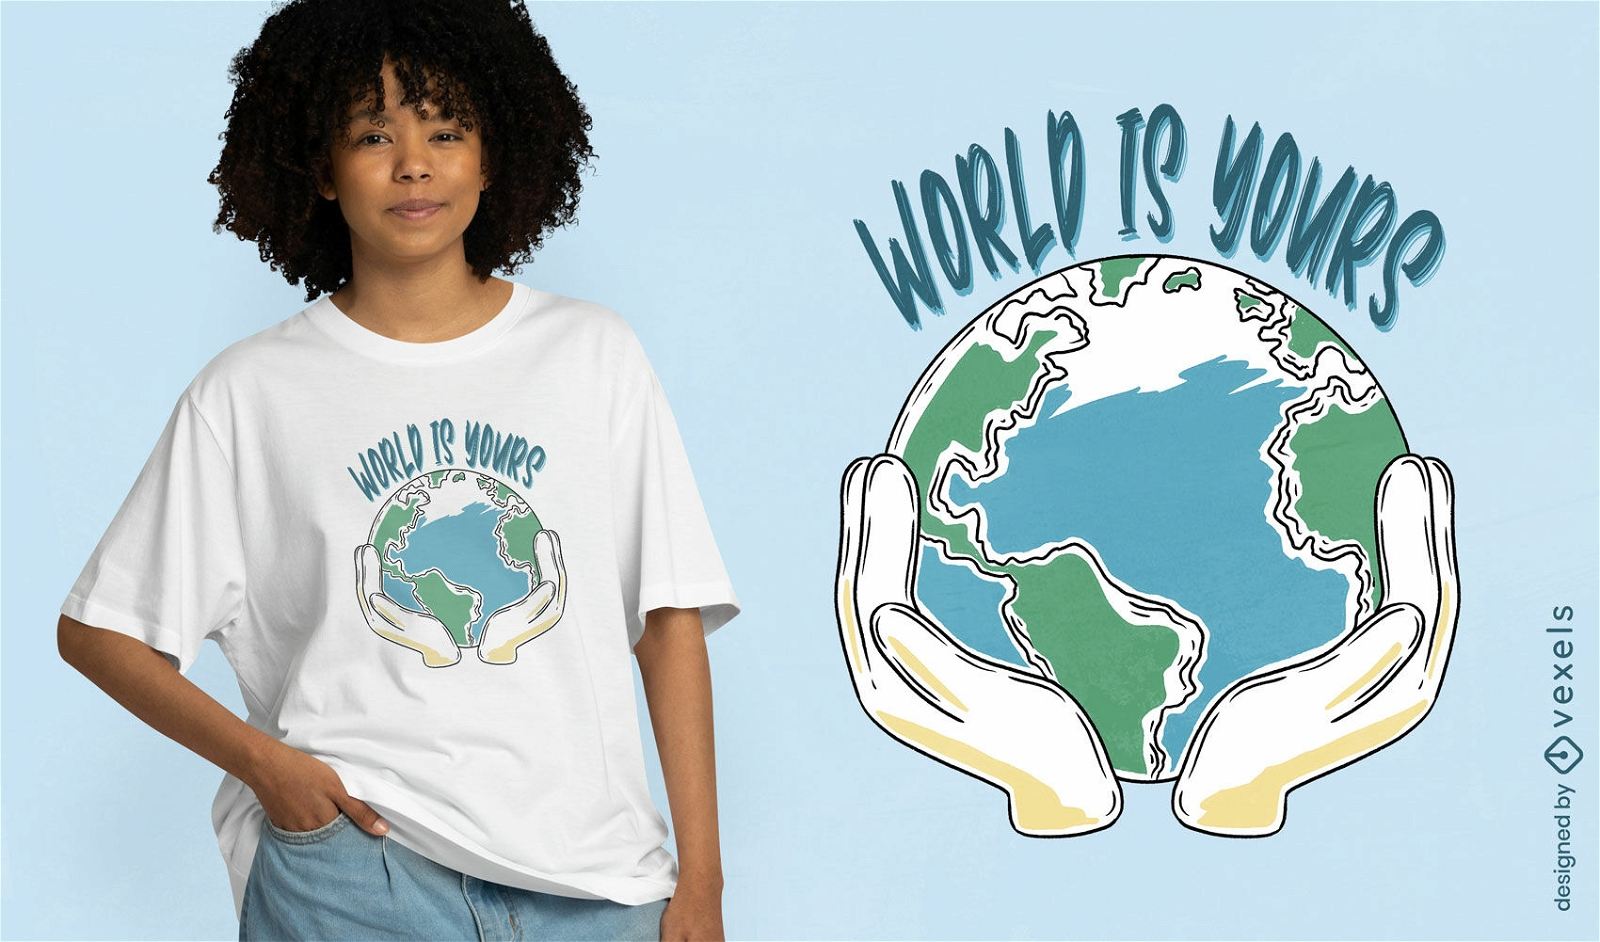 Dise?o de camiseta de empoderamiento global.